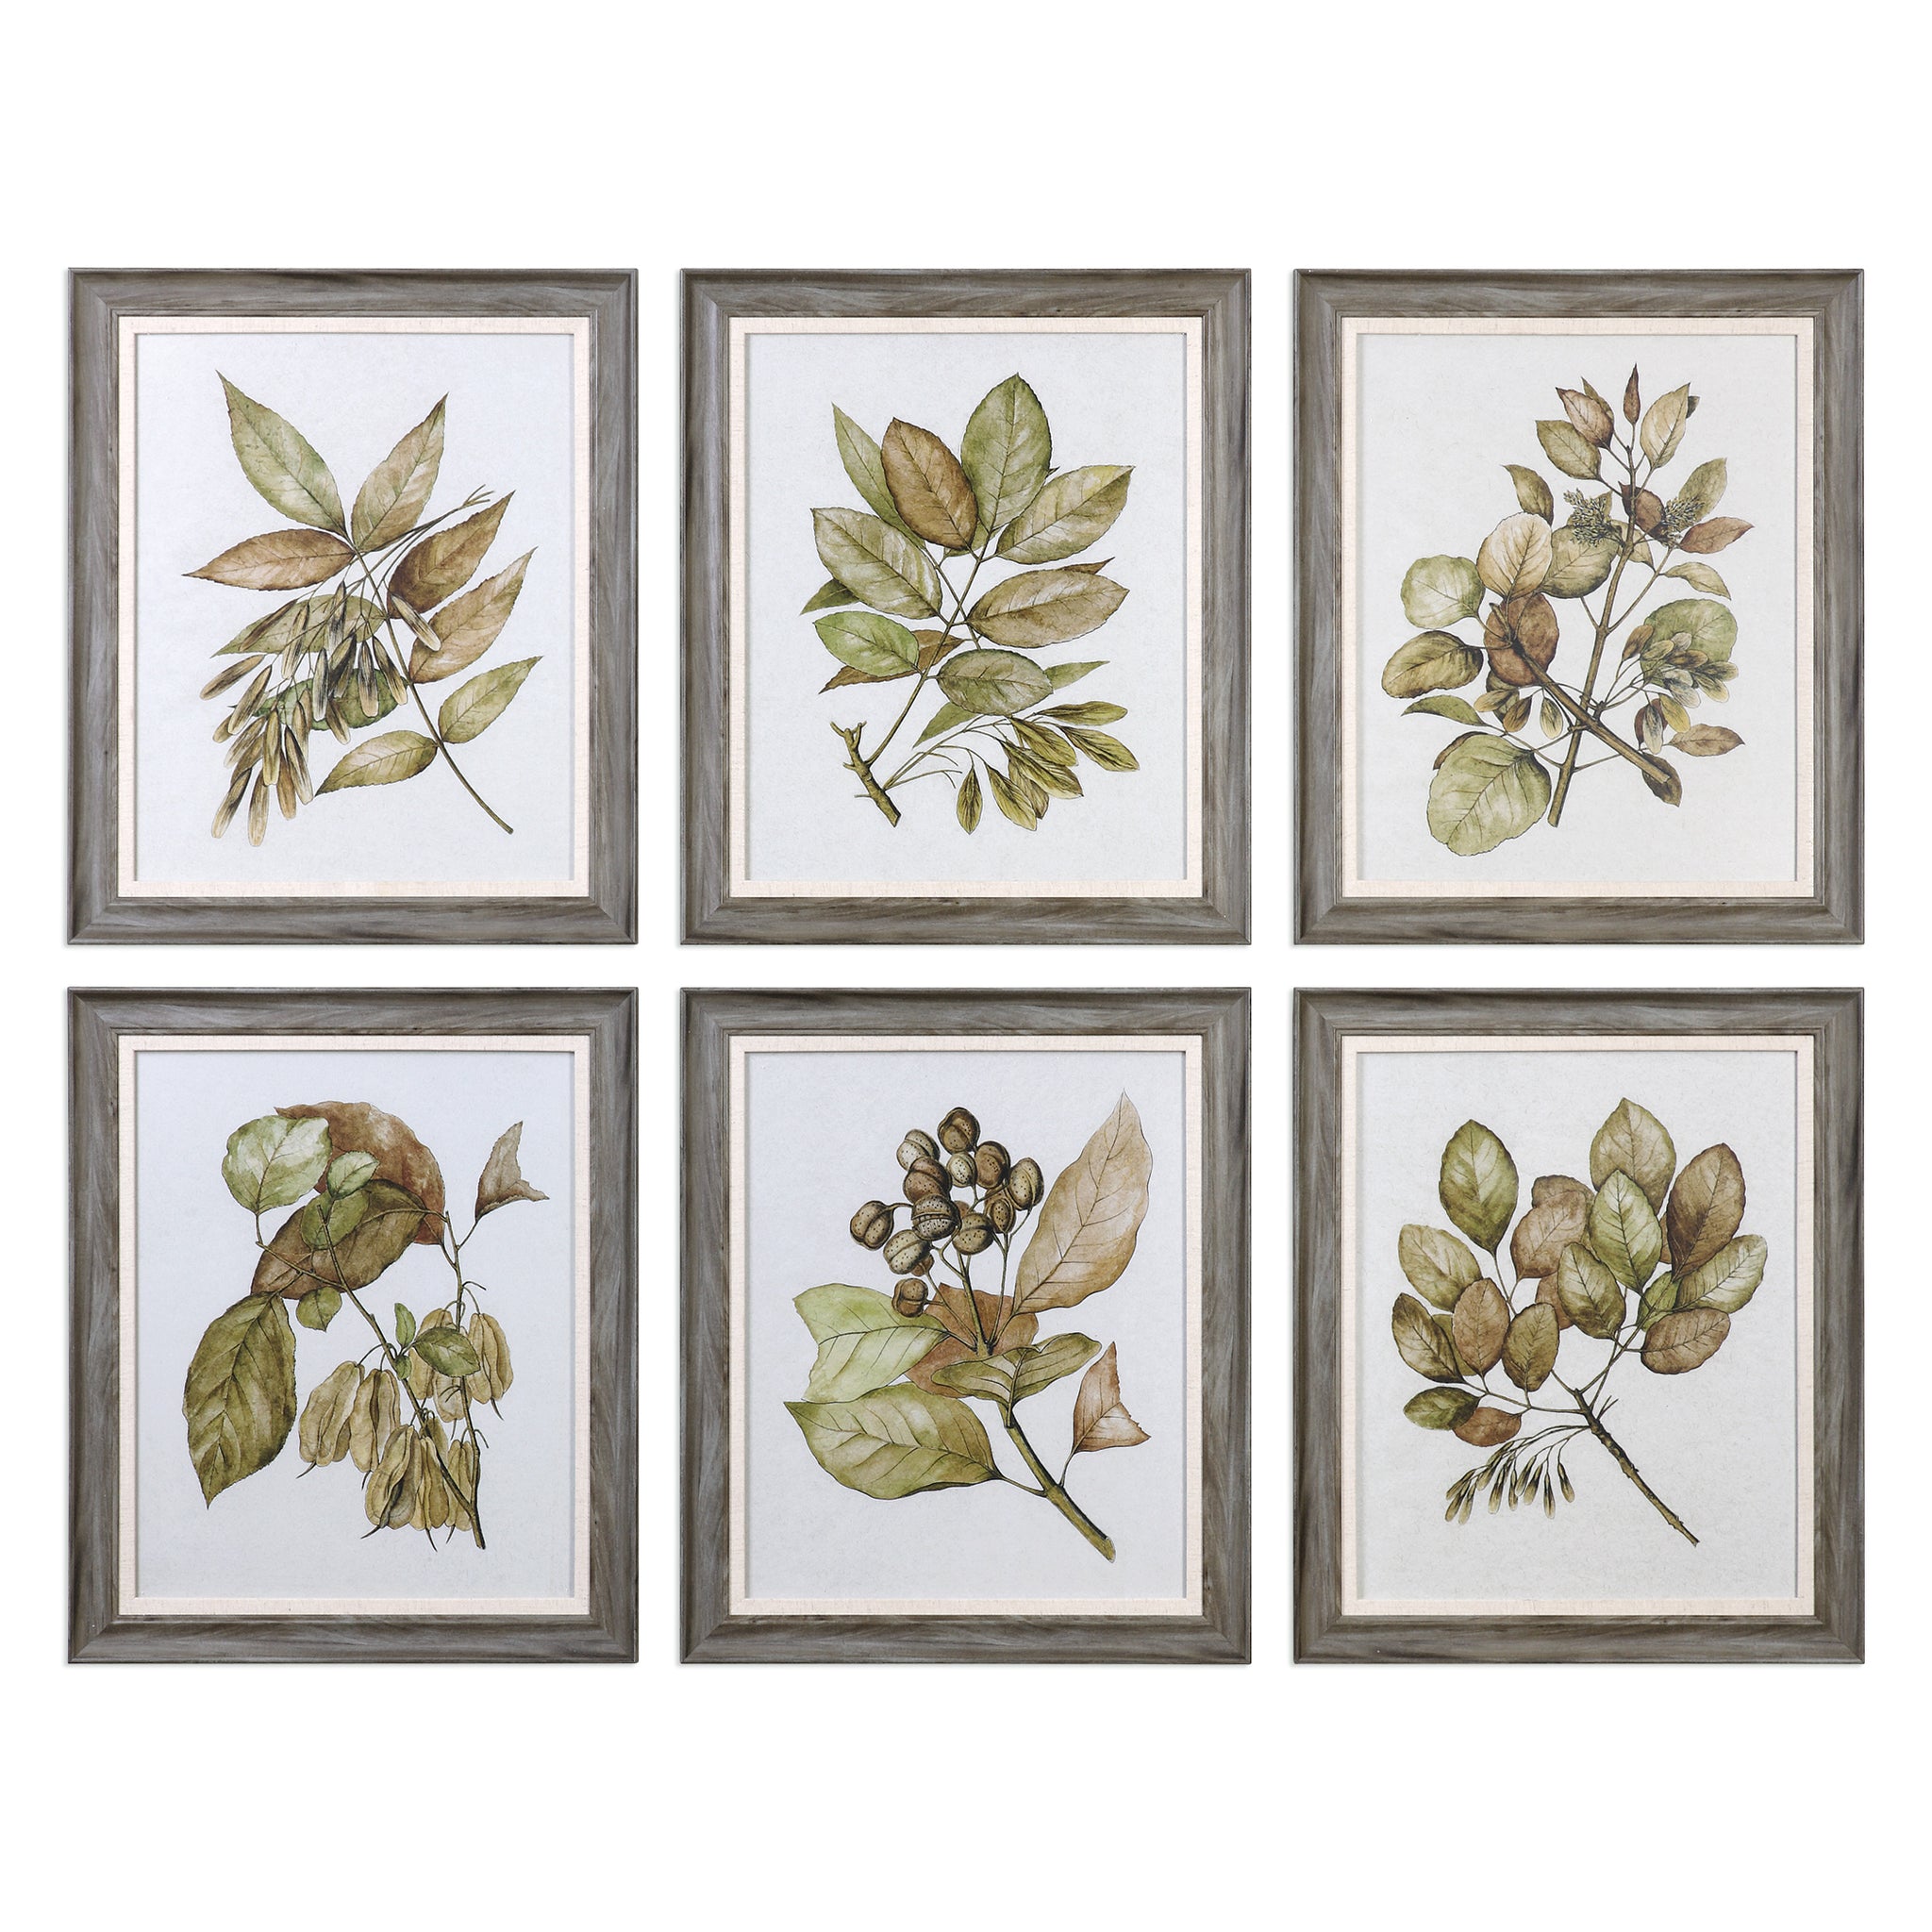 Uttermost Seedlings Framed Prints S/6